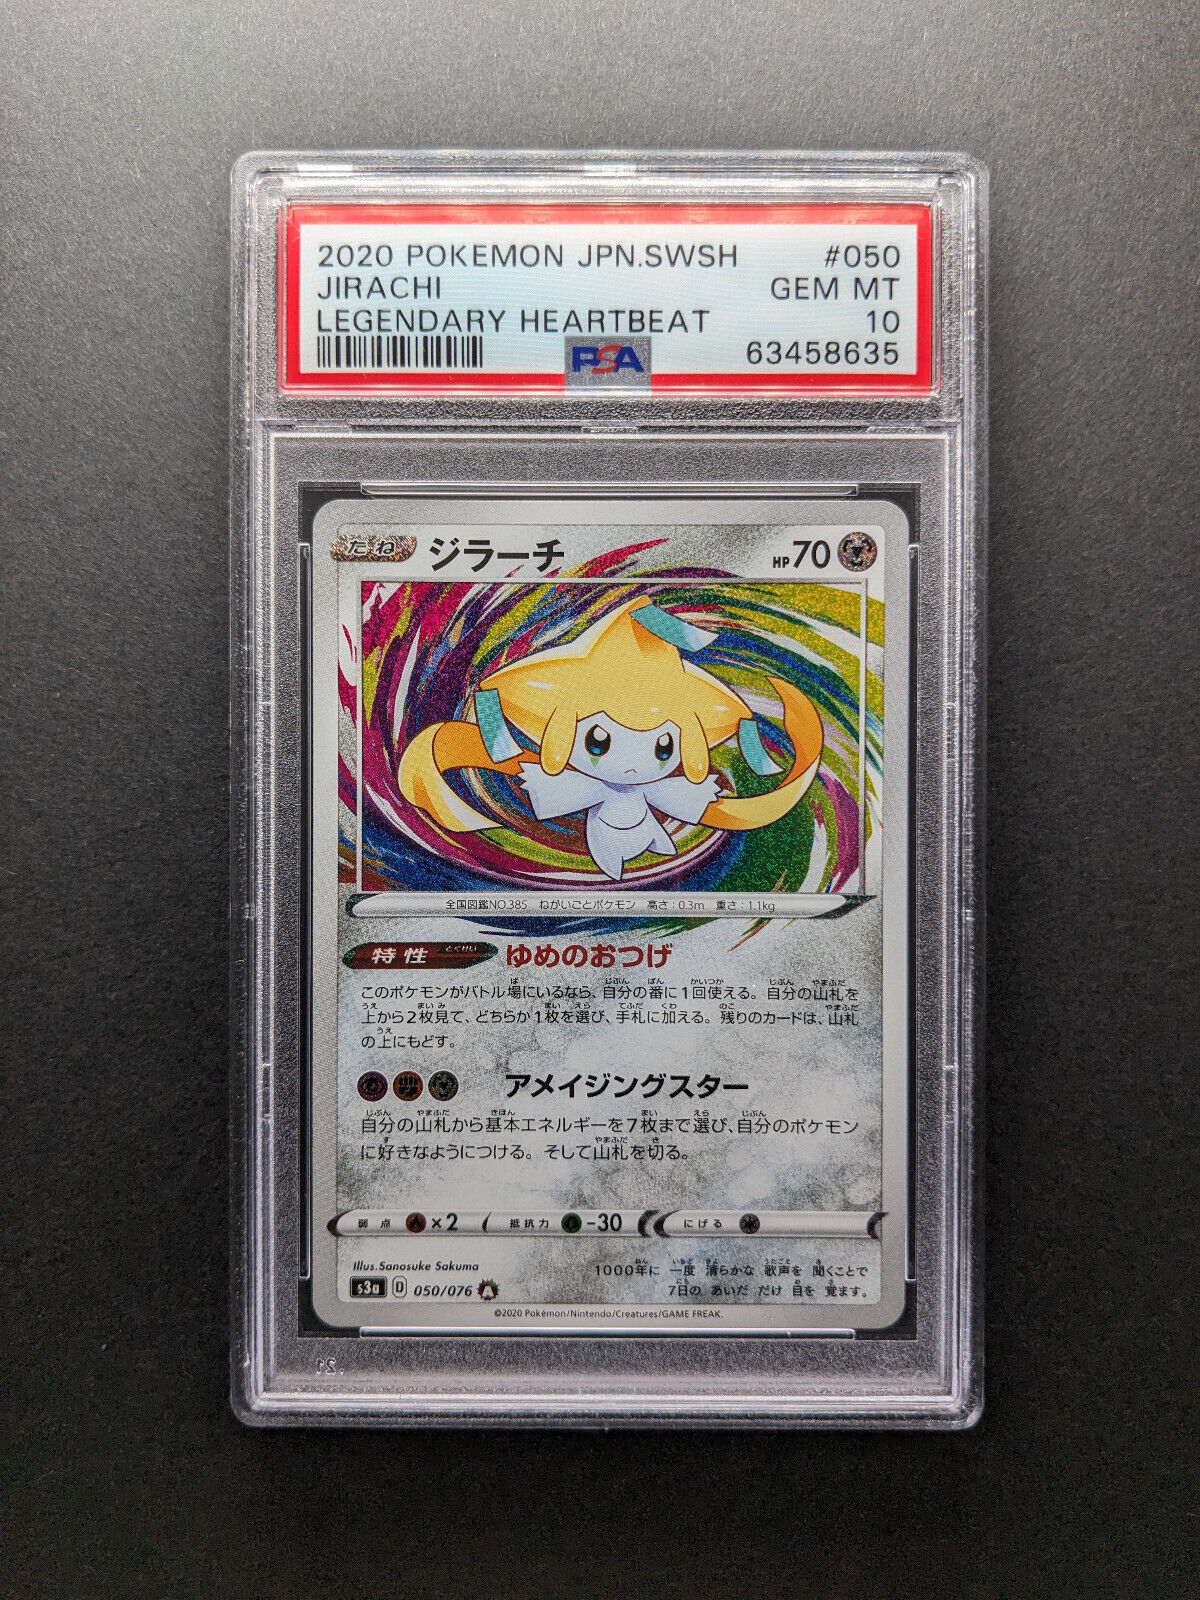 PSA 10 - 2020 Pokemon JIRACHI - 050/076 - Amazing Rare - Japanese